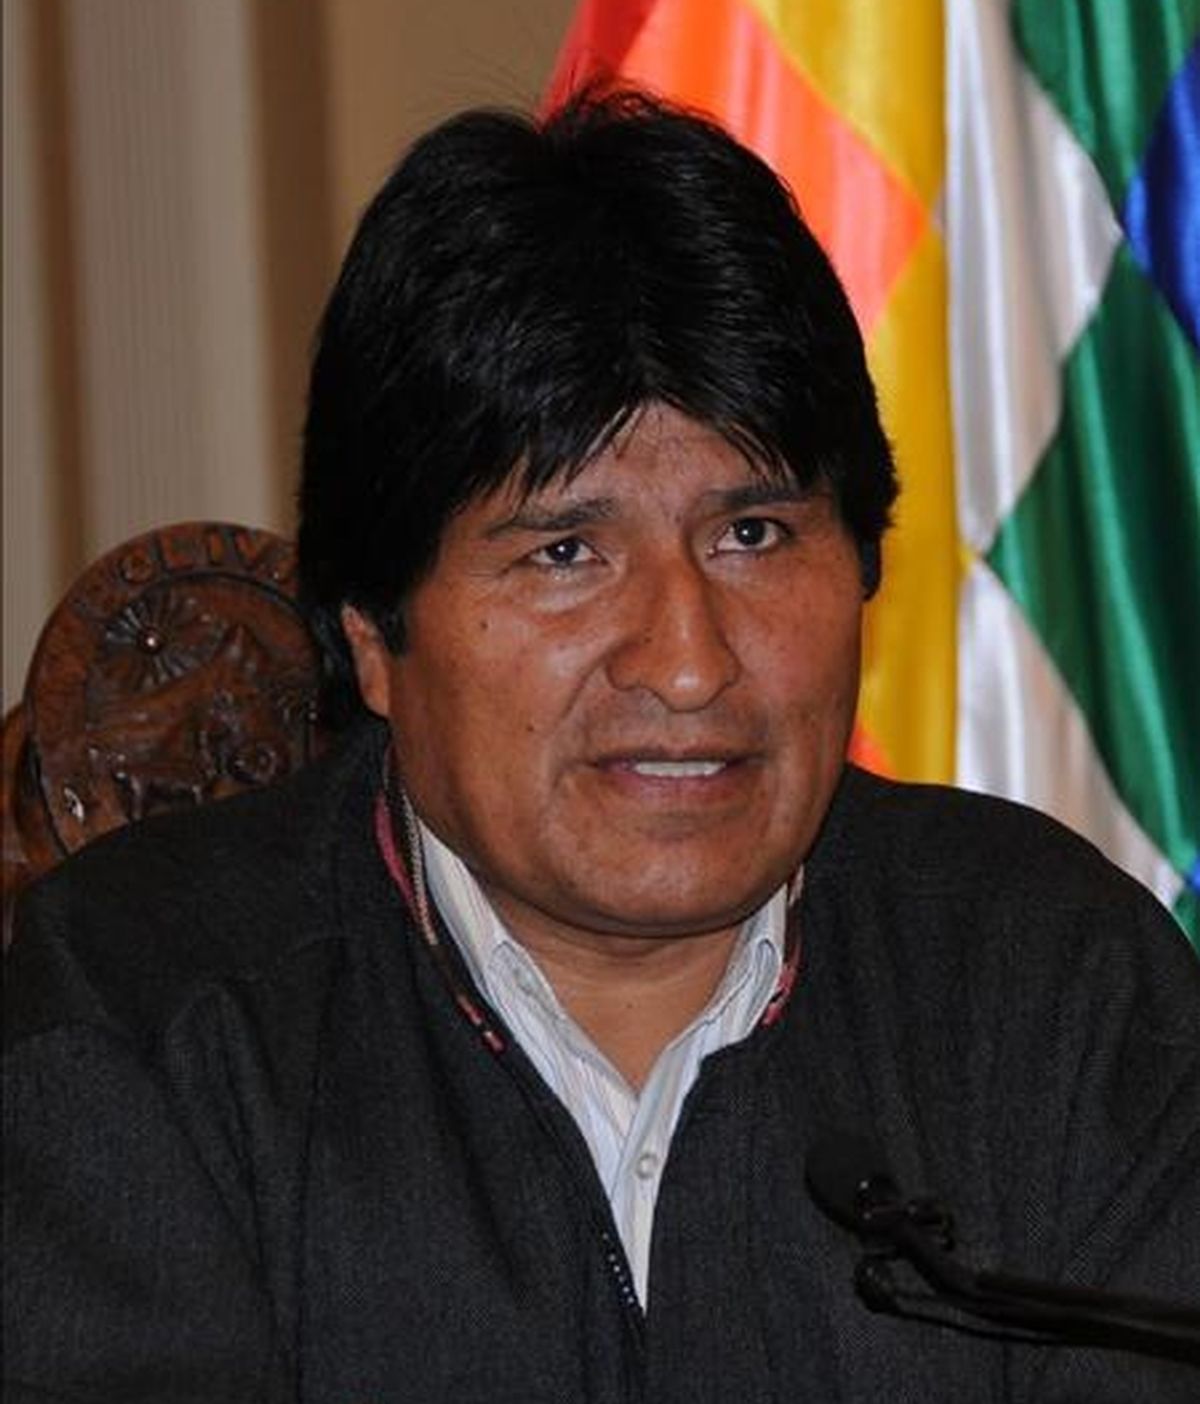 "Posiblemente tengo los días contados. Que sepa el pueblo boliviano si pasa algo con Evo, con Álvaro, con los ministros será obra de la derecha fascista organizada con apoyo de la embajada de EE.UU.", dijo Morales.